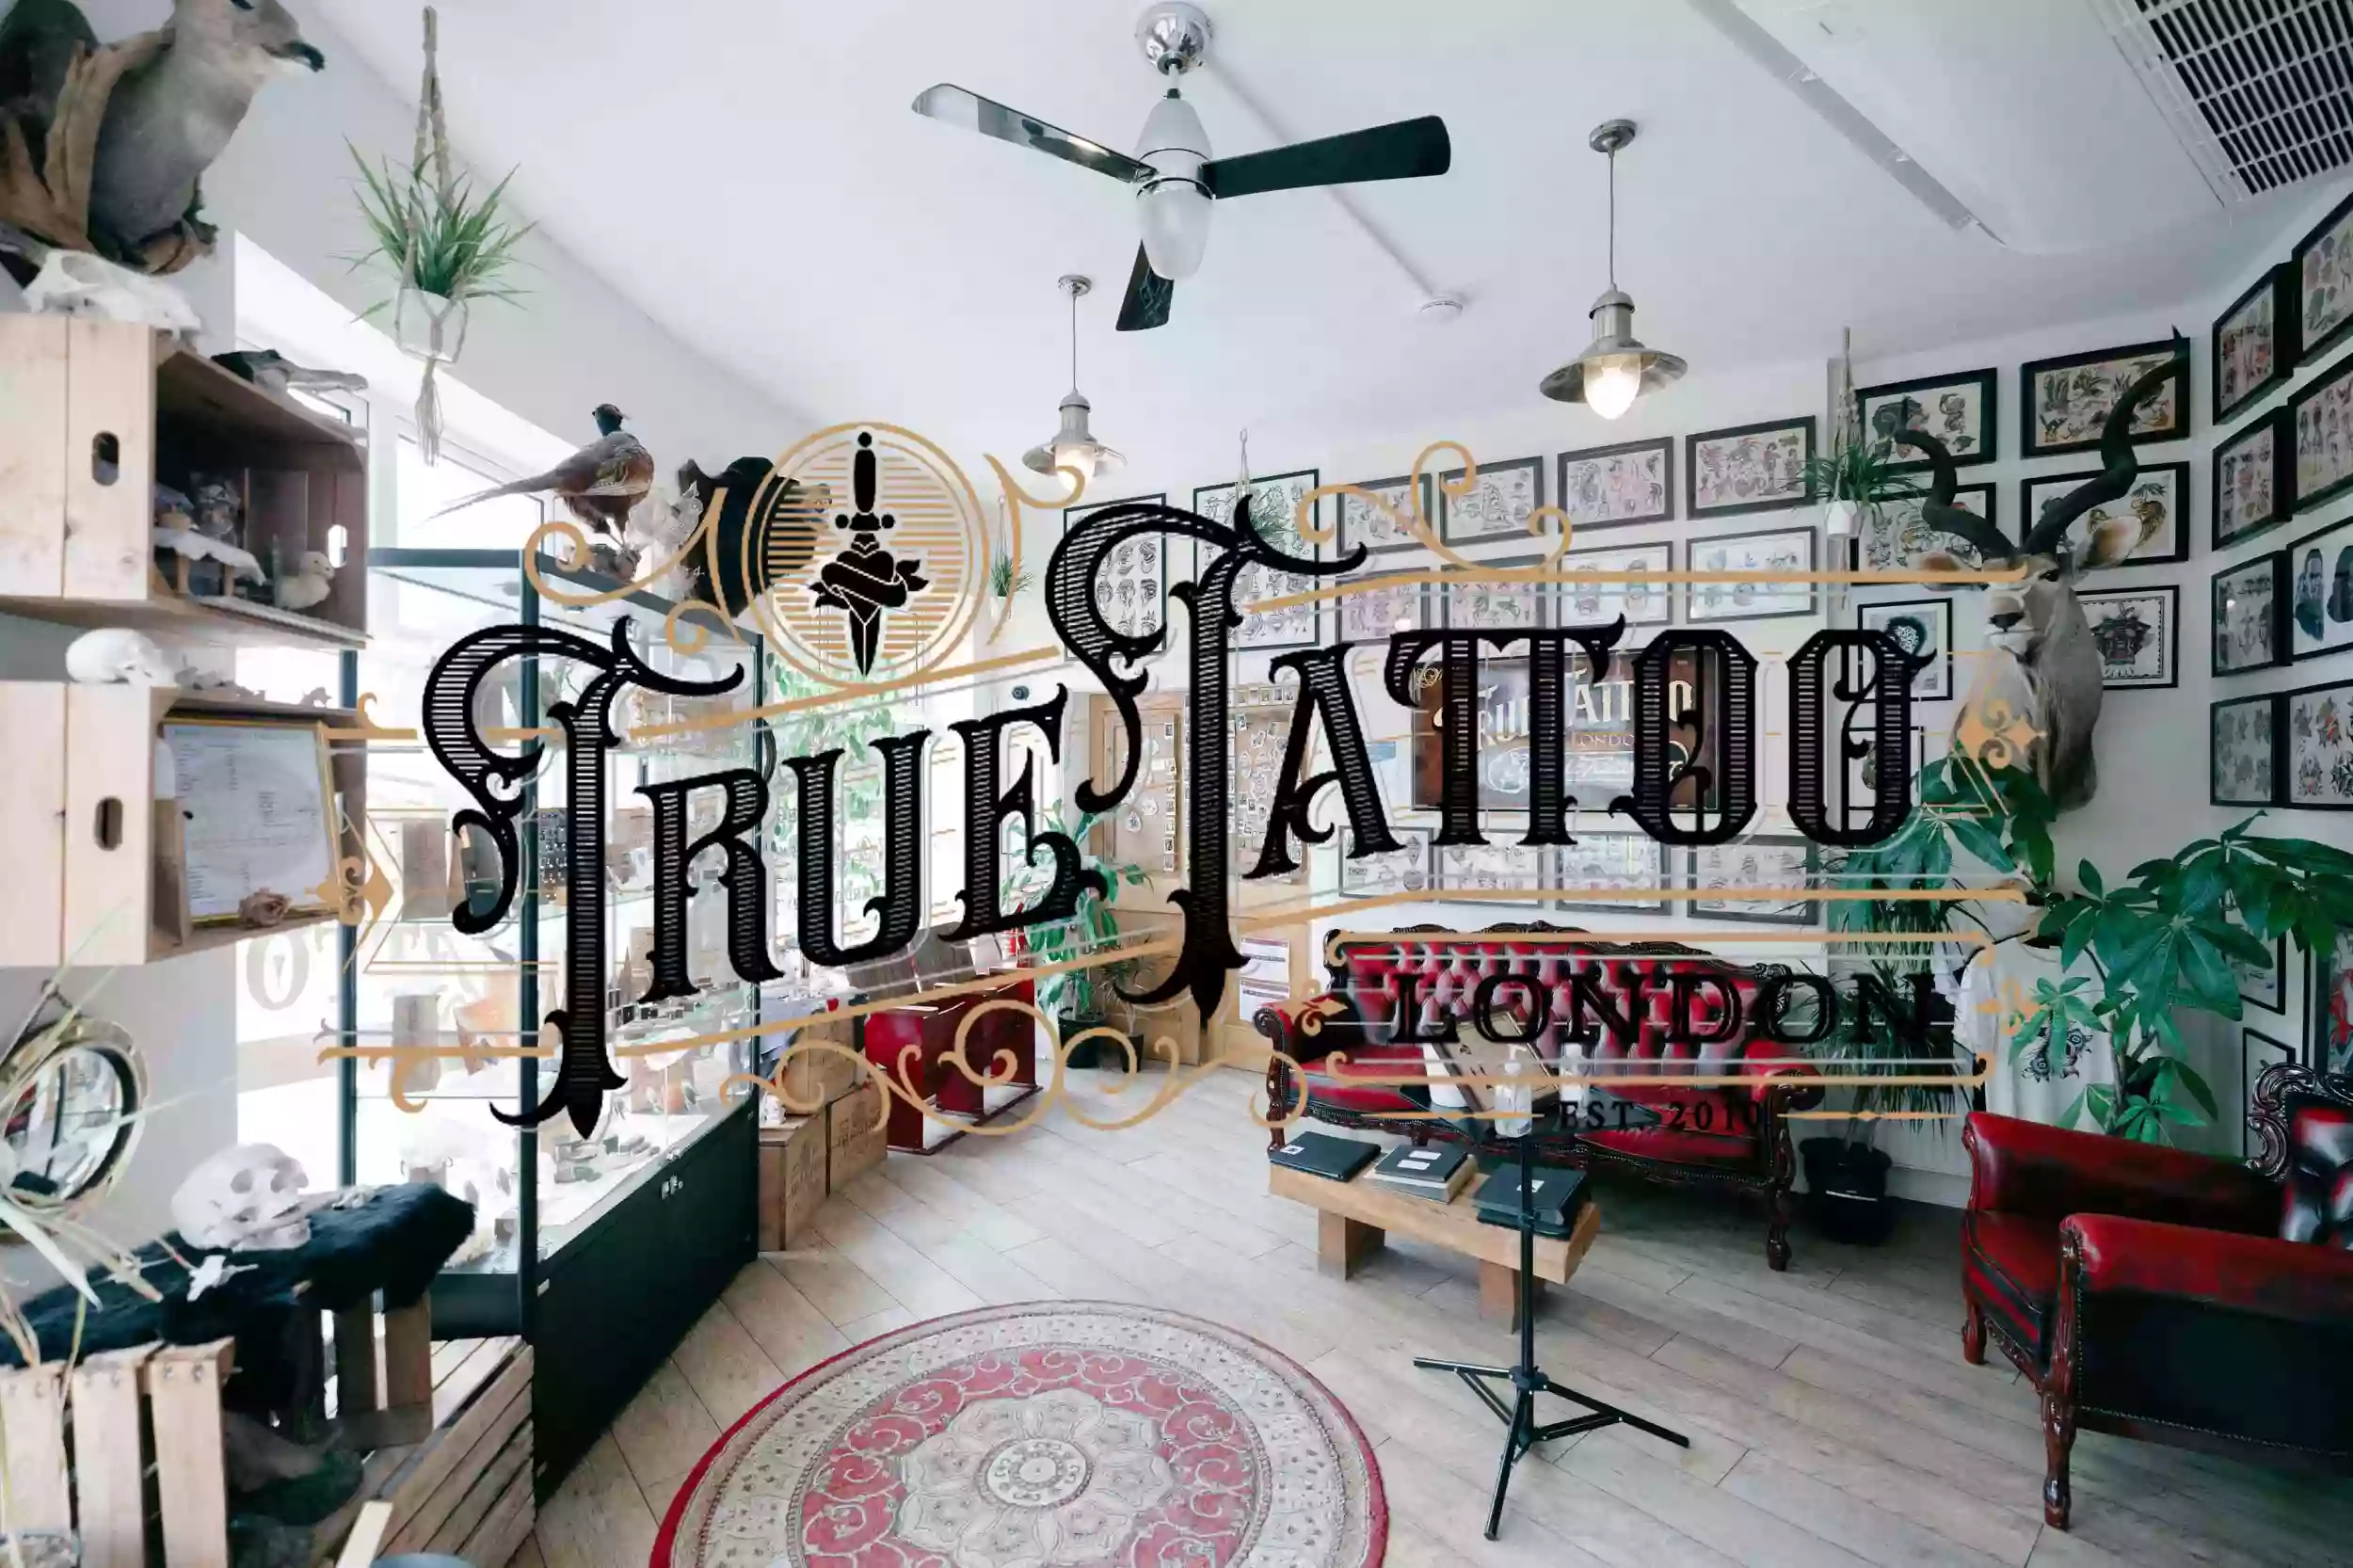 True Tattoo